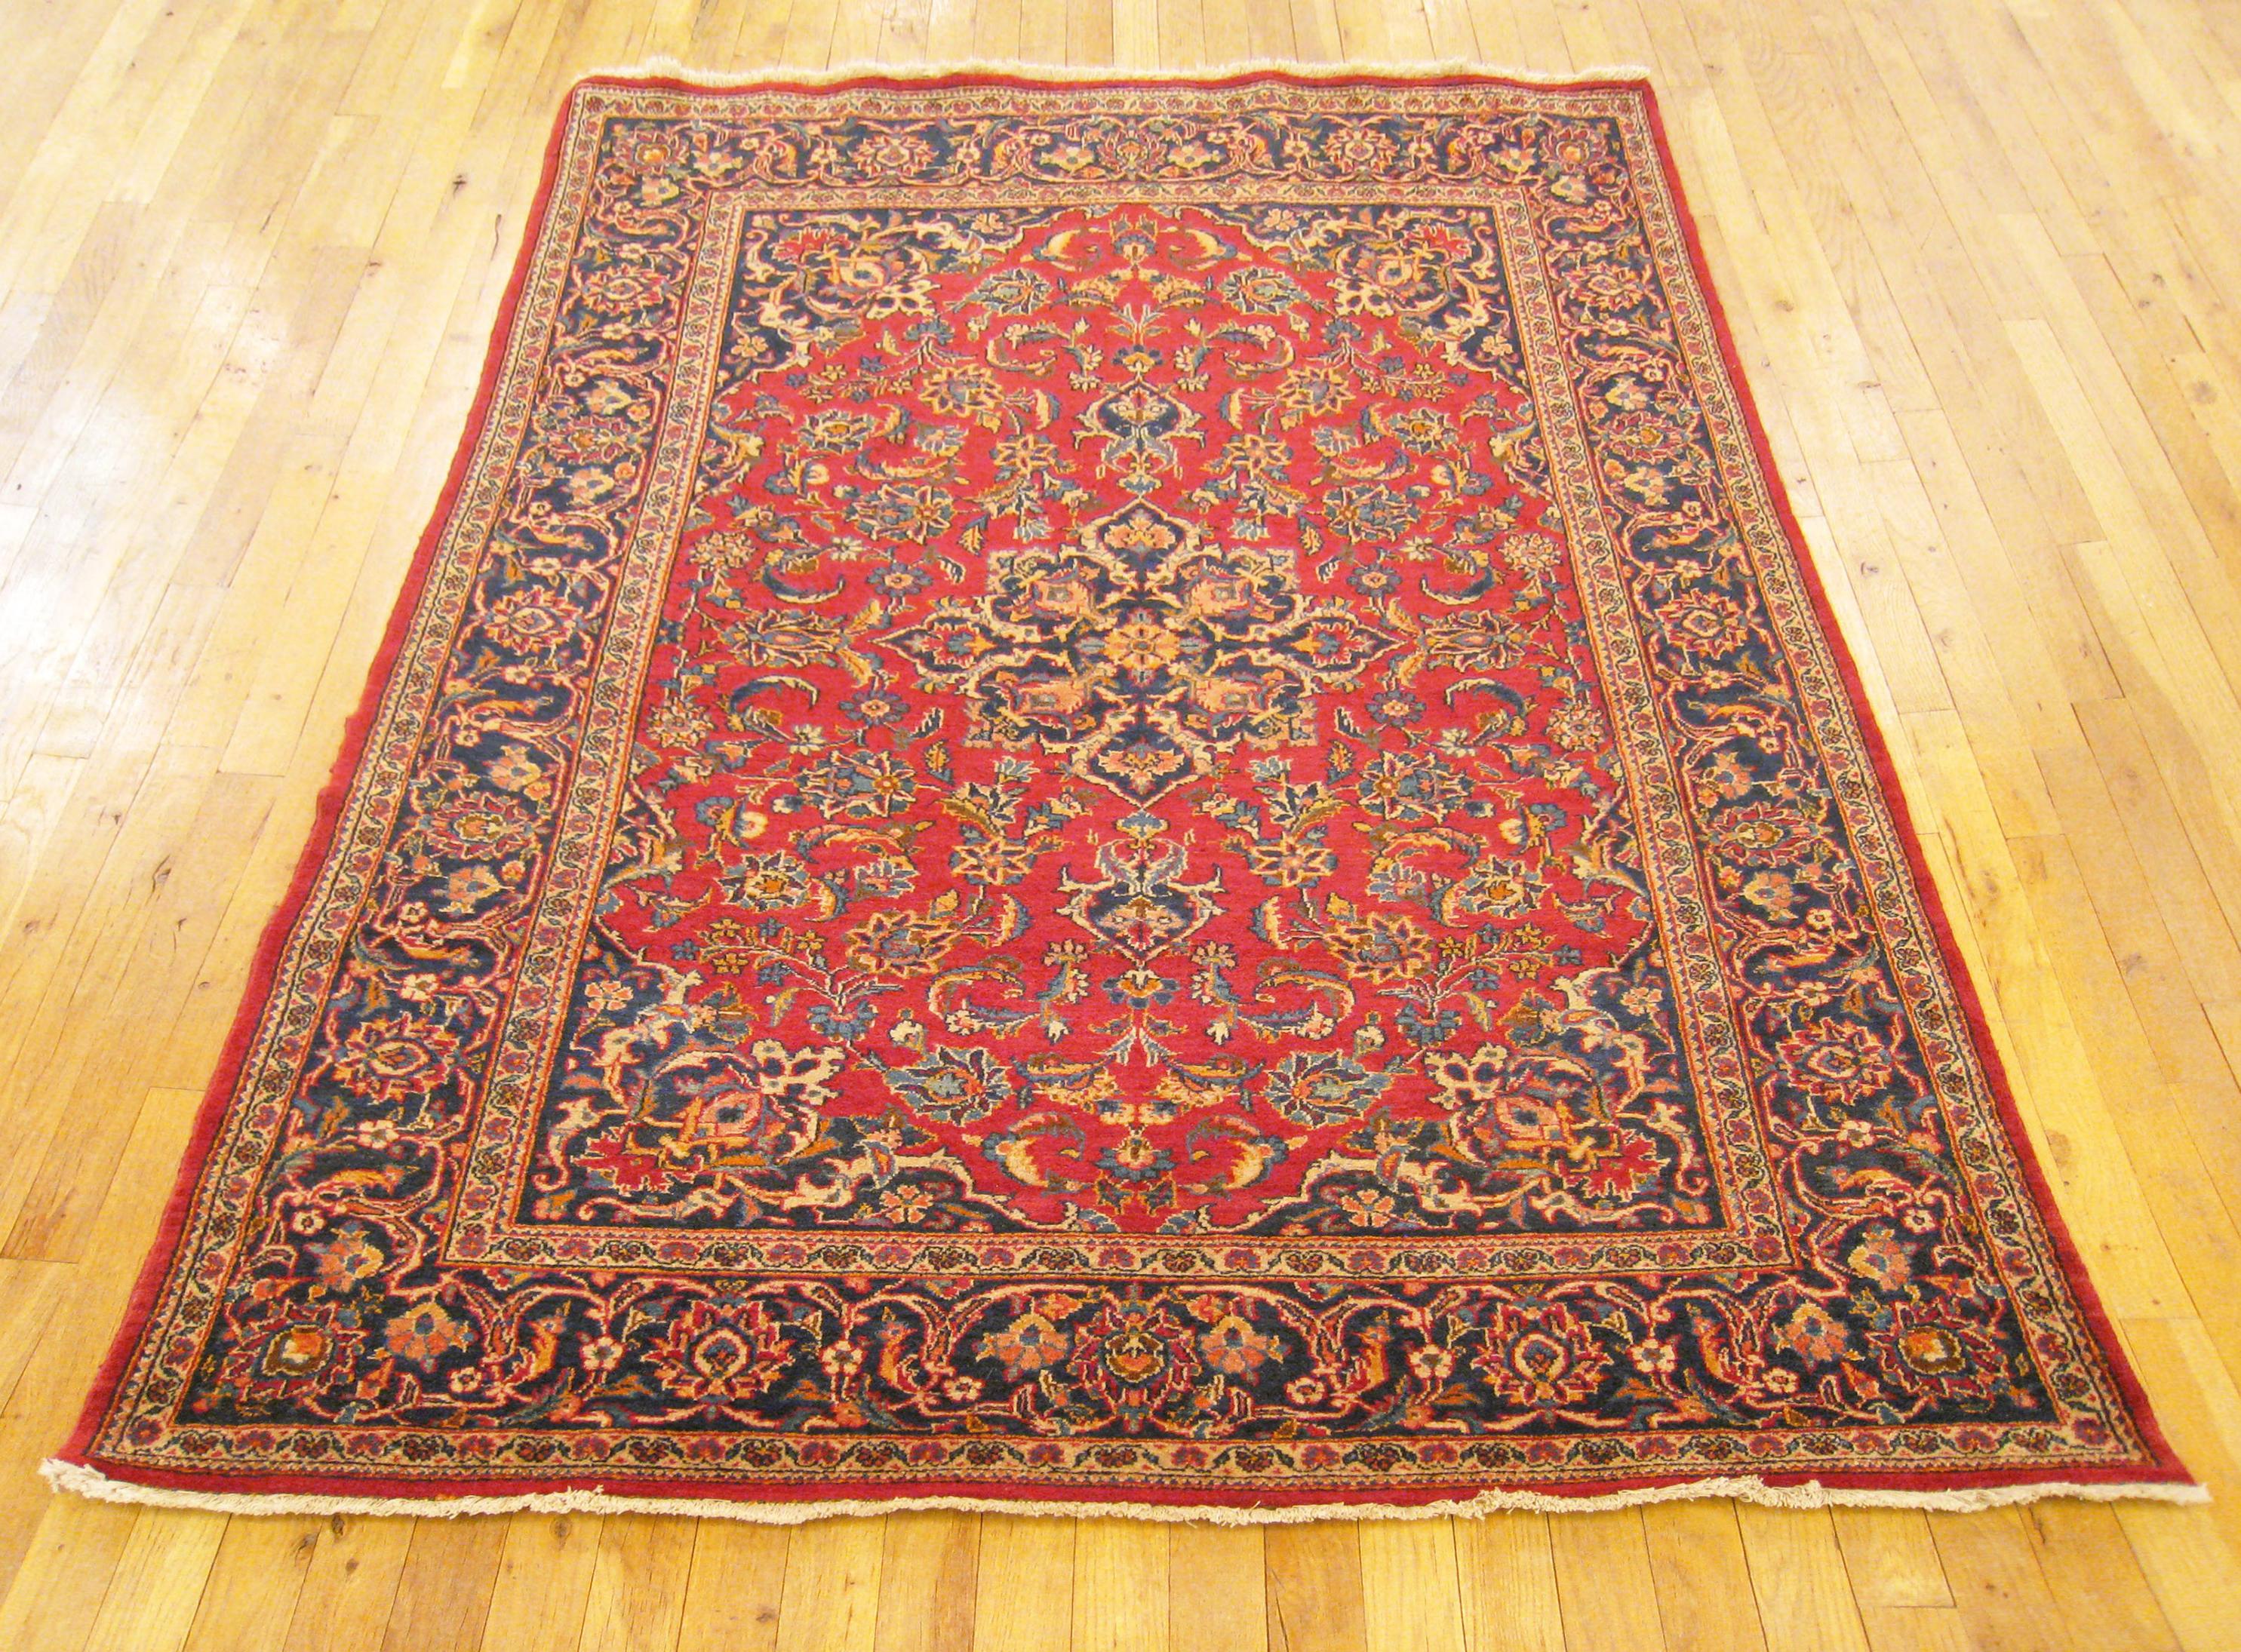 Vintage Persian Kashan Oriental carpet, in small size

An extraordinary vintage Persian Kashan carpet, circa 1940, size 6.7